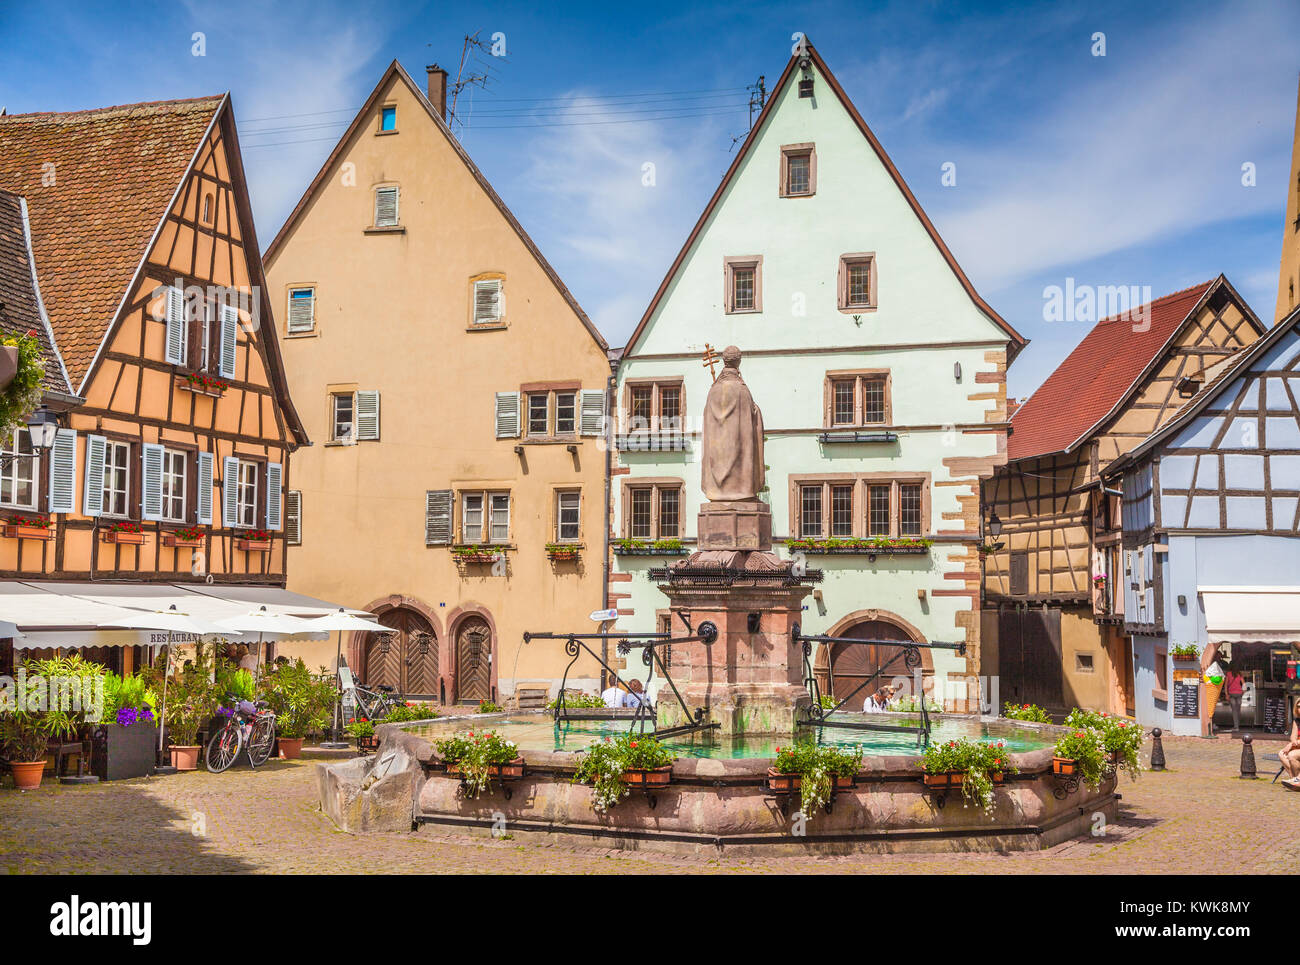 Historischen Stadtplatz von Eguisheim, einem beliebten Reiseziel an der berühmten elsässischen Weinstraße, im Sommer, Elsass, Frankreich Stockfoto